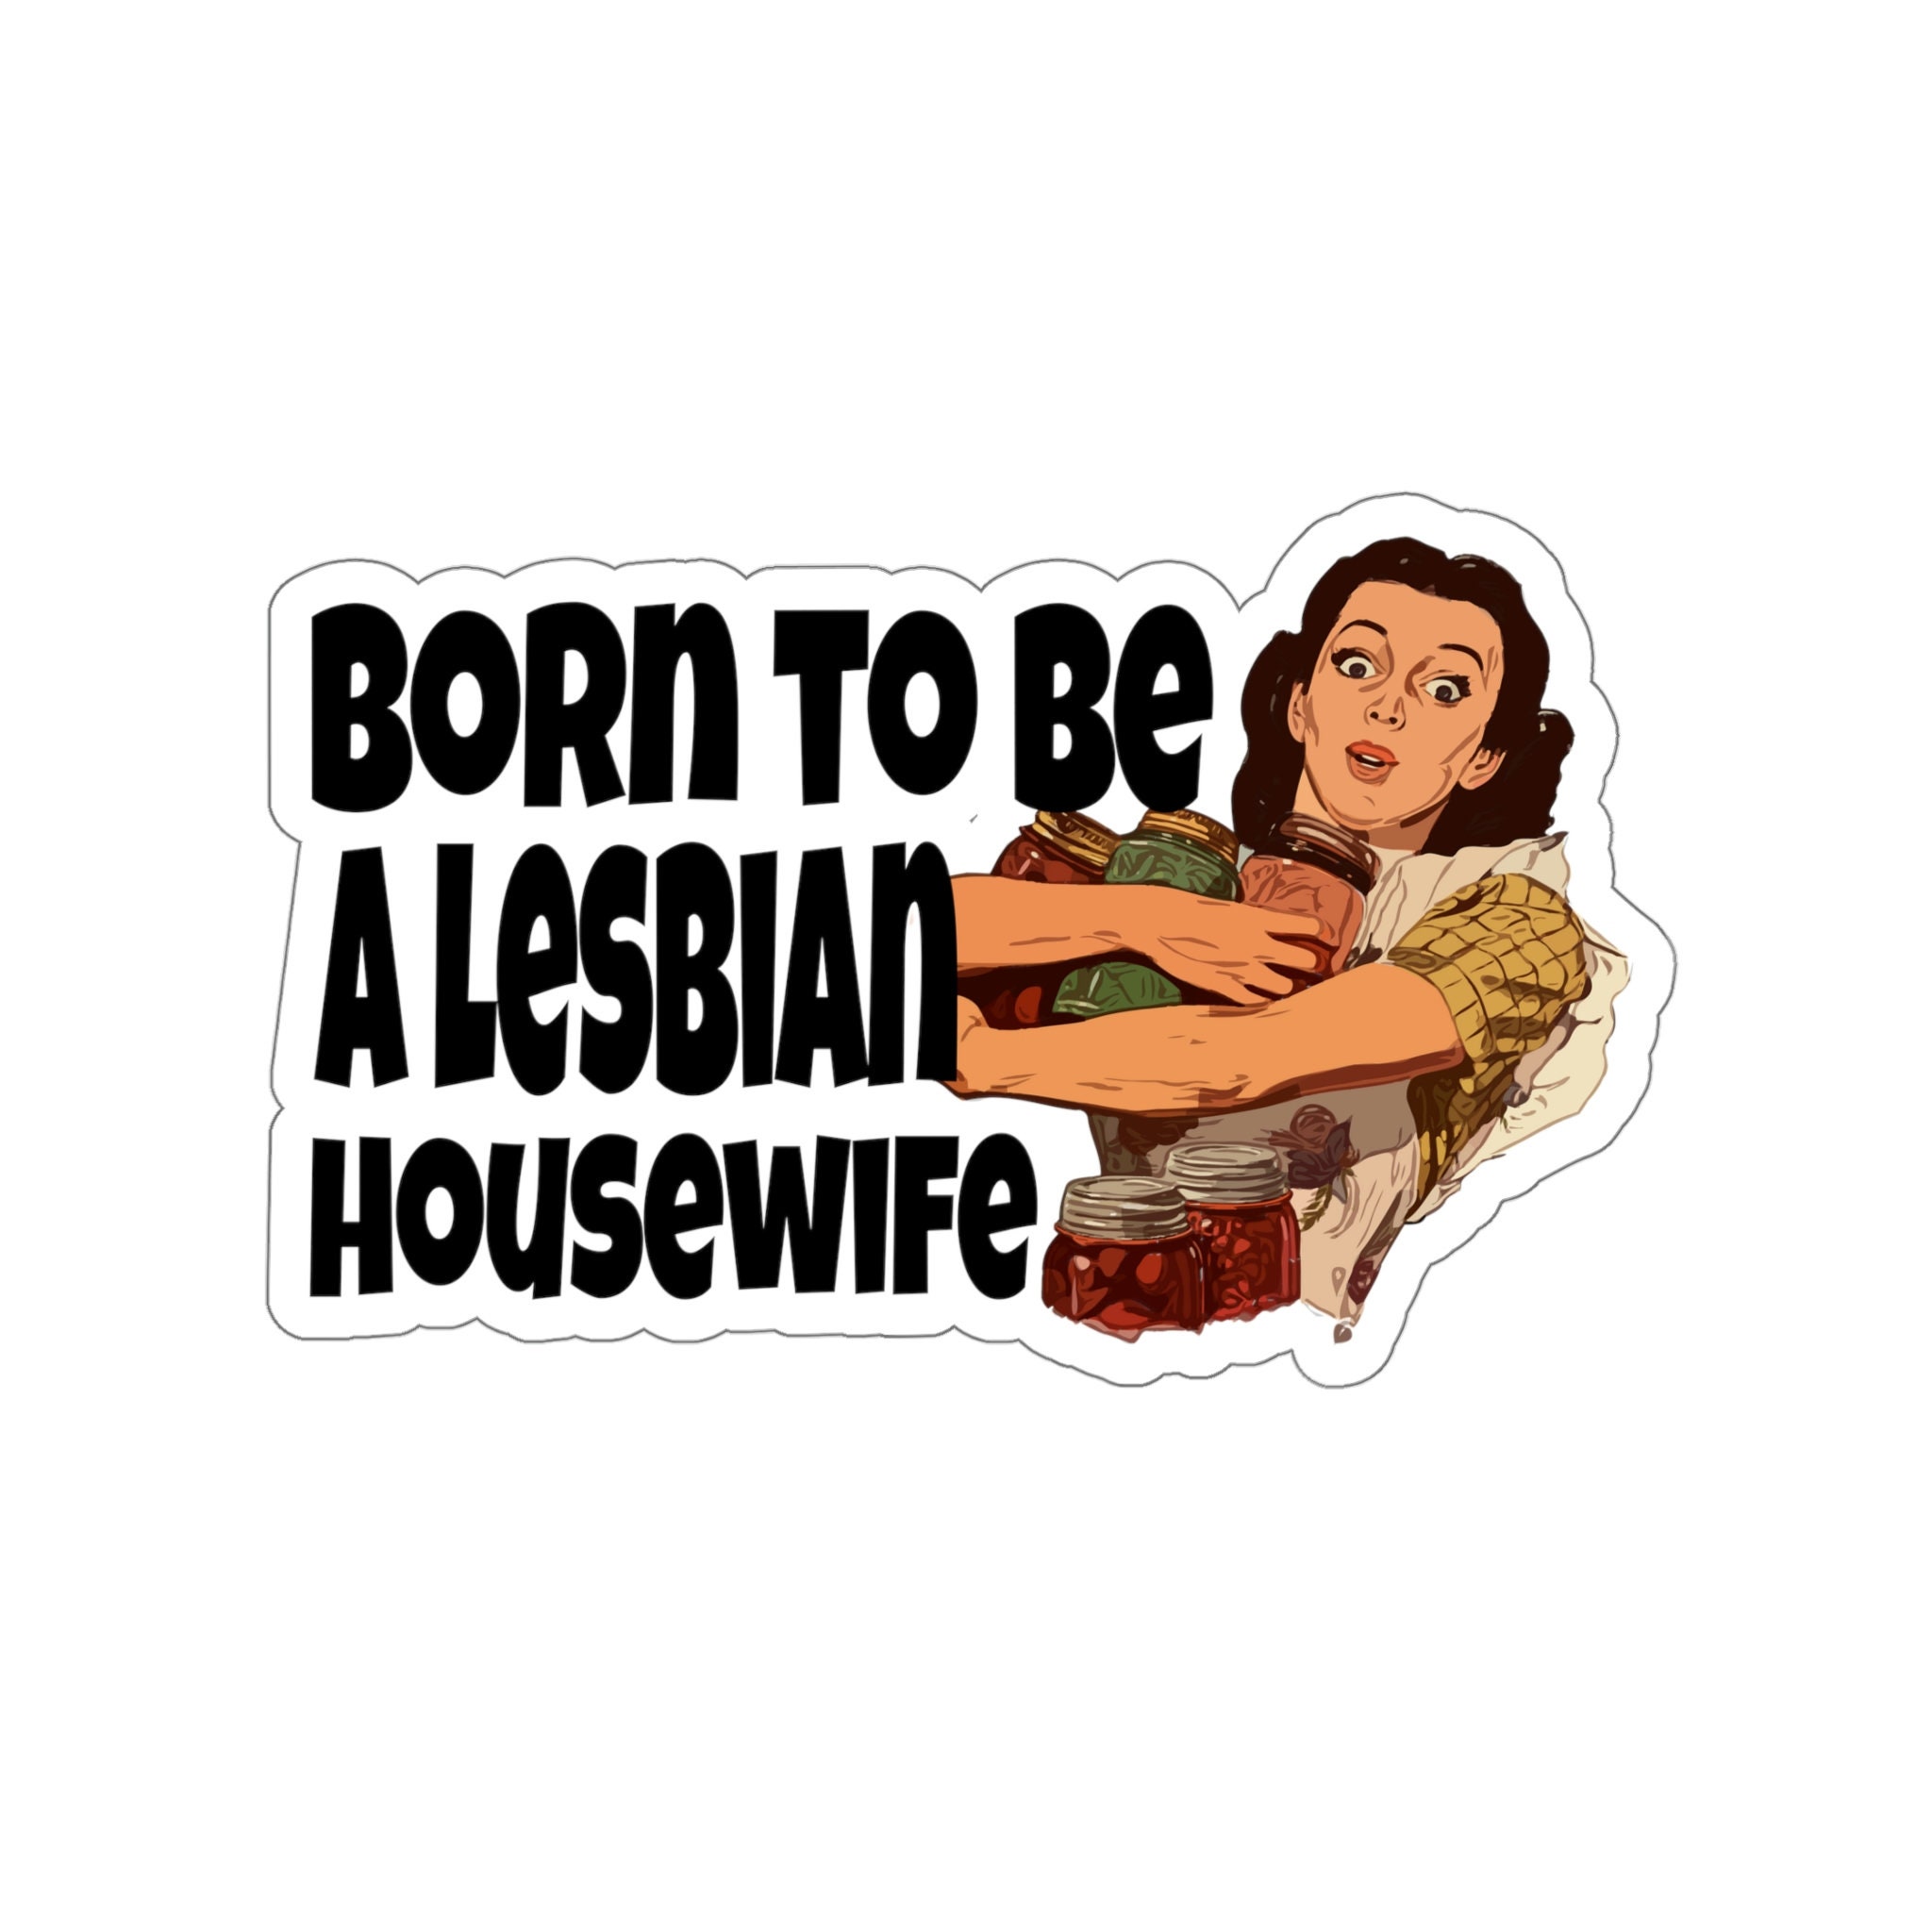 lesbian housewife books rm bali Adult Pics Hq